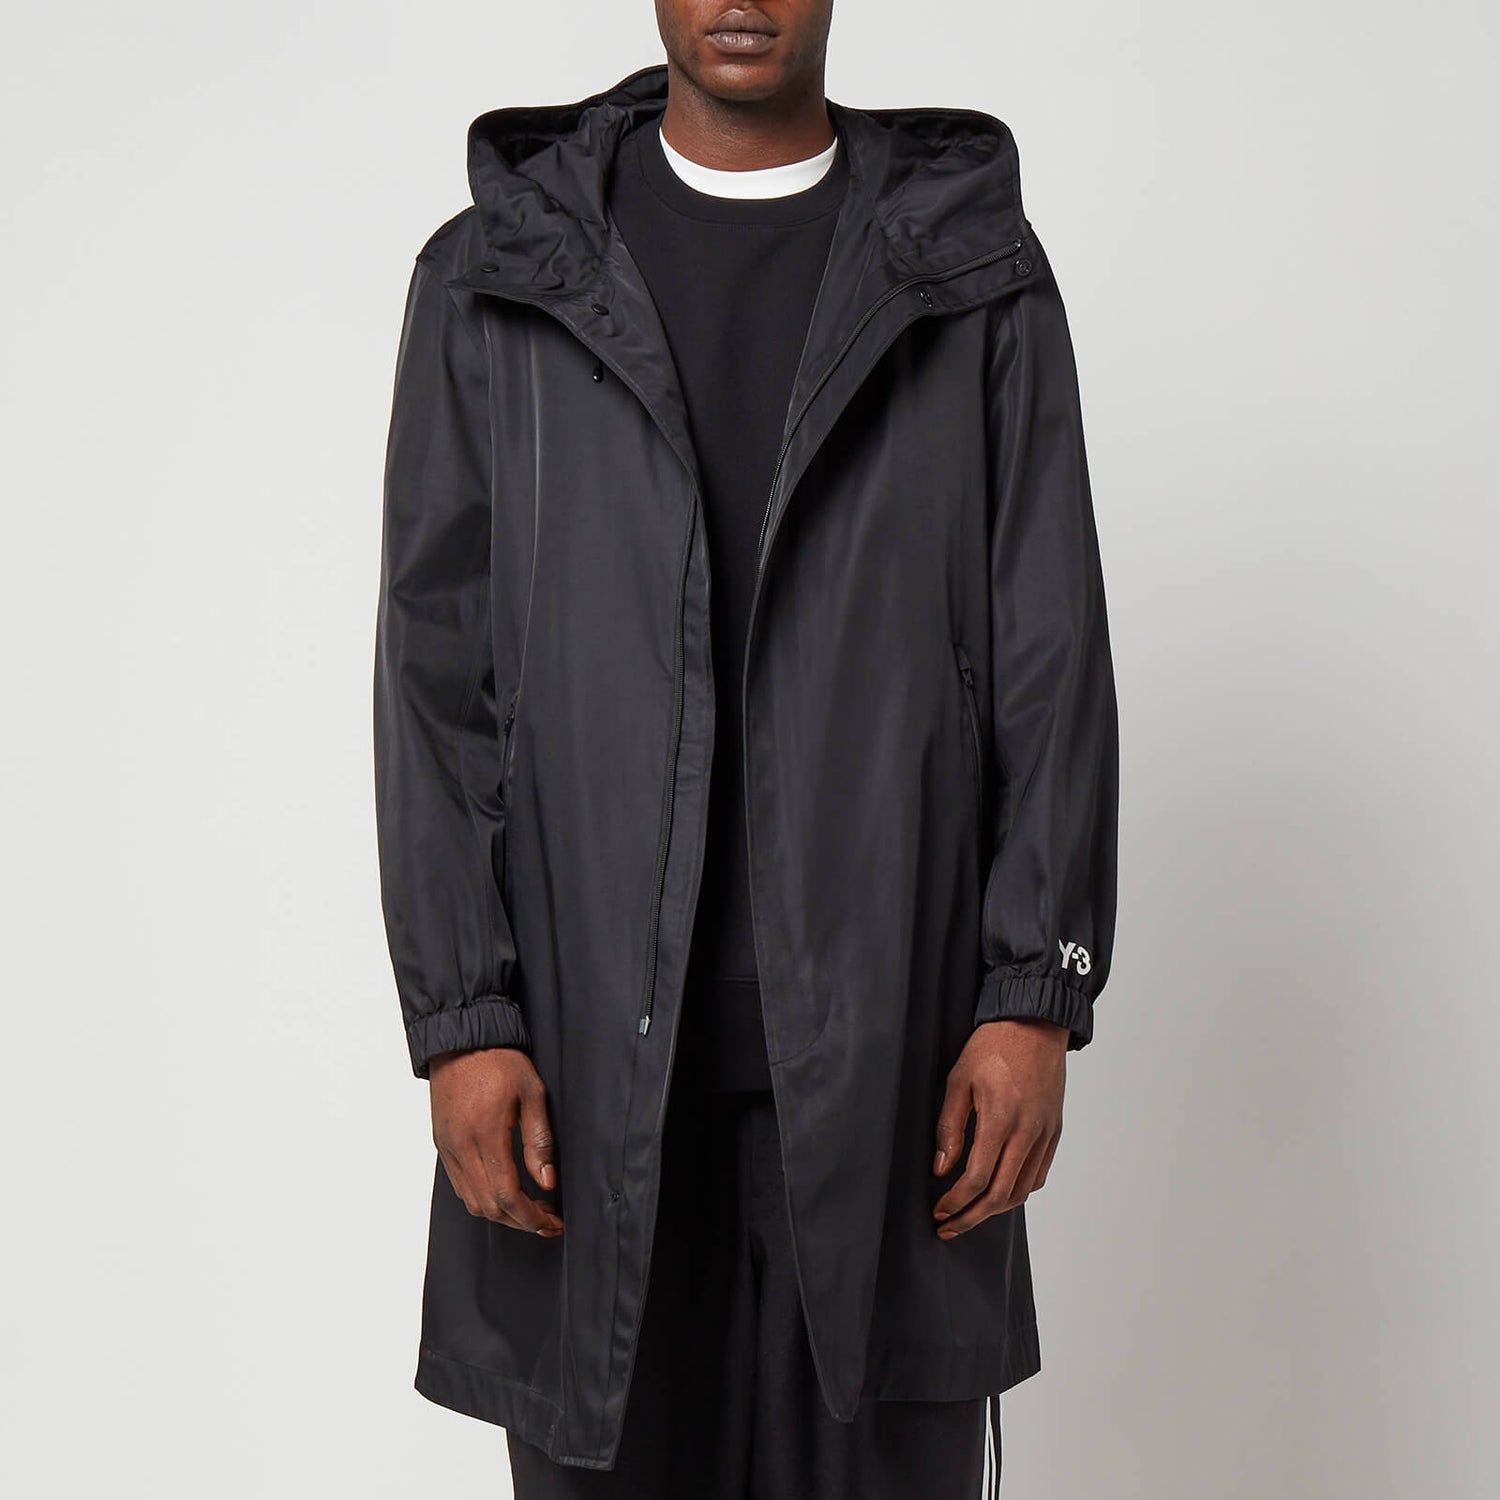 Y-3 Men's Hooded Coat - Black - S